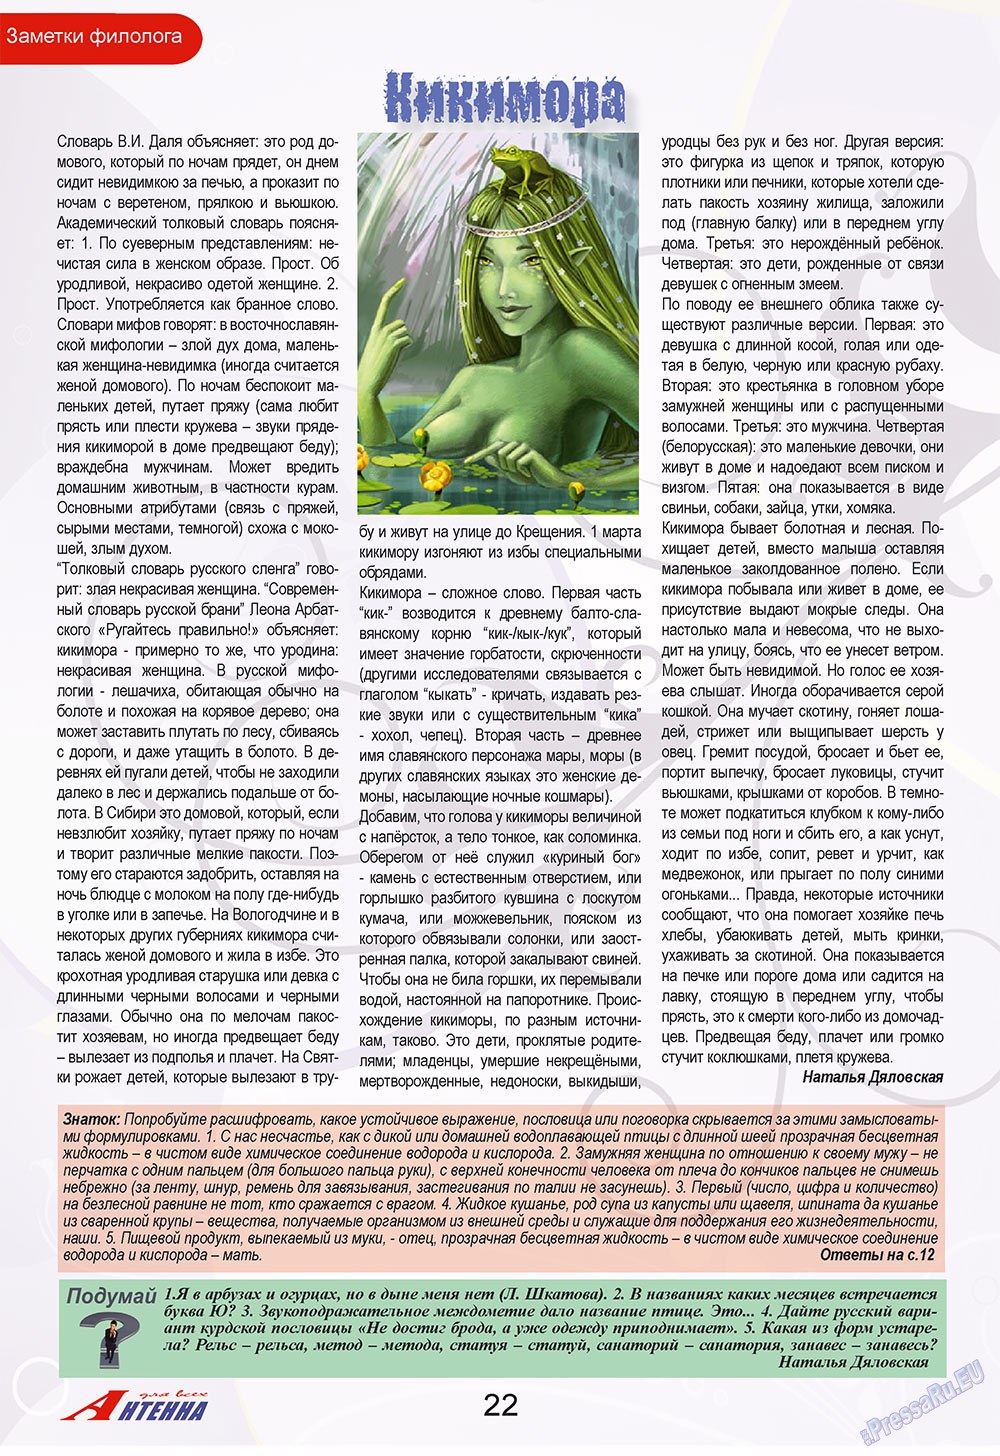 Антенна, журнал. 2009 №9 стр.22